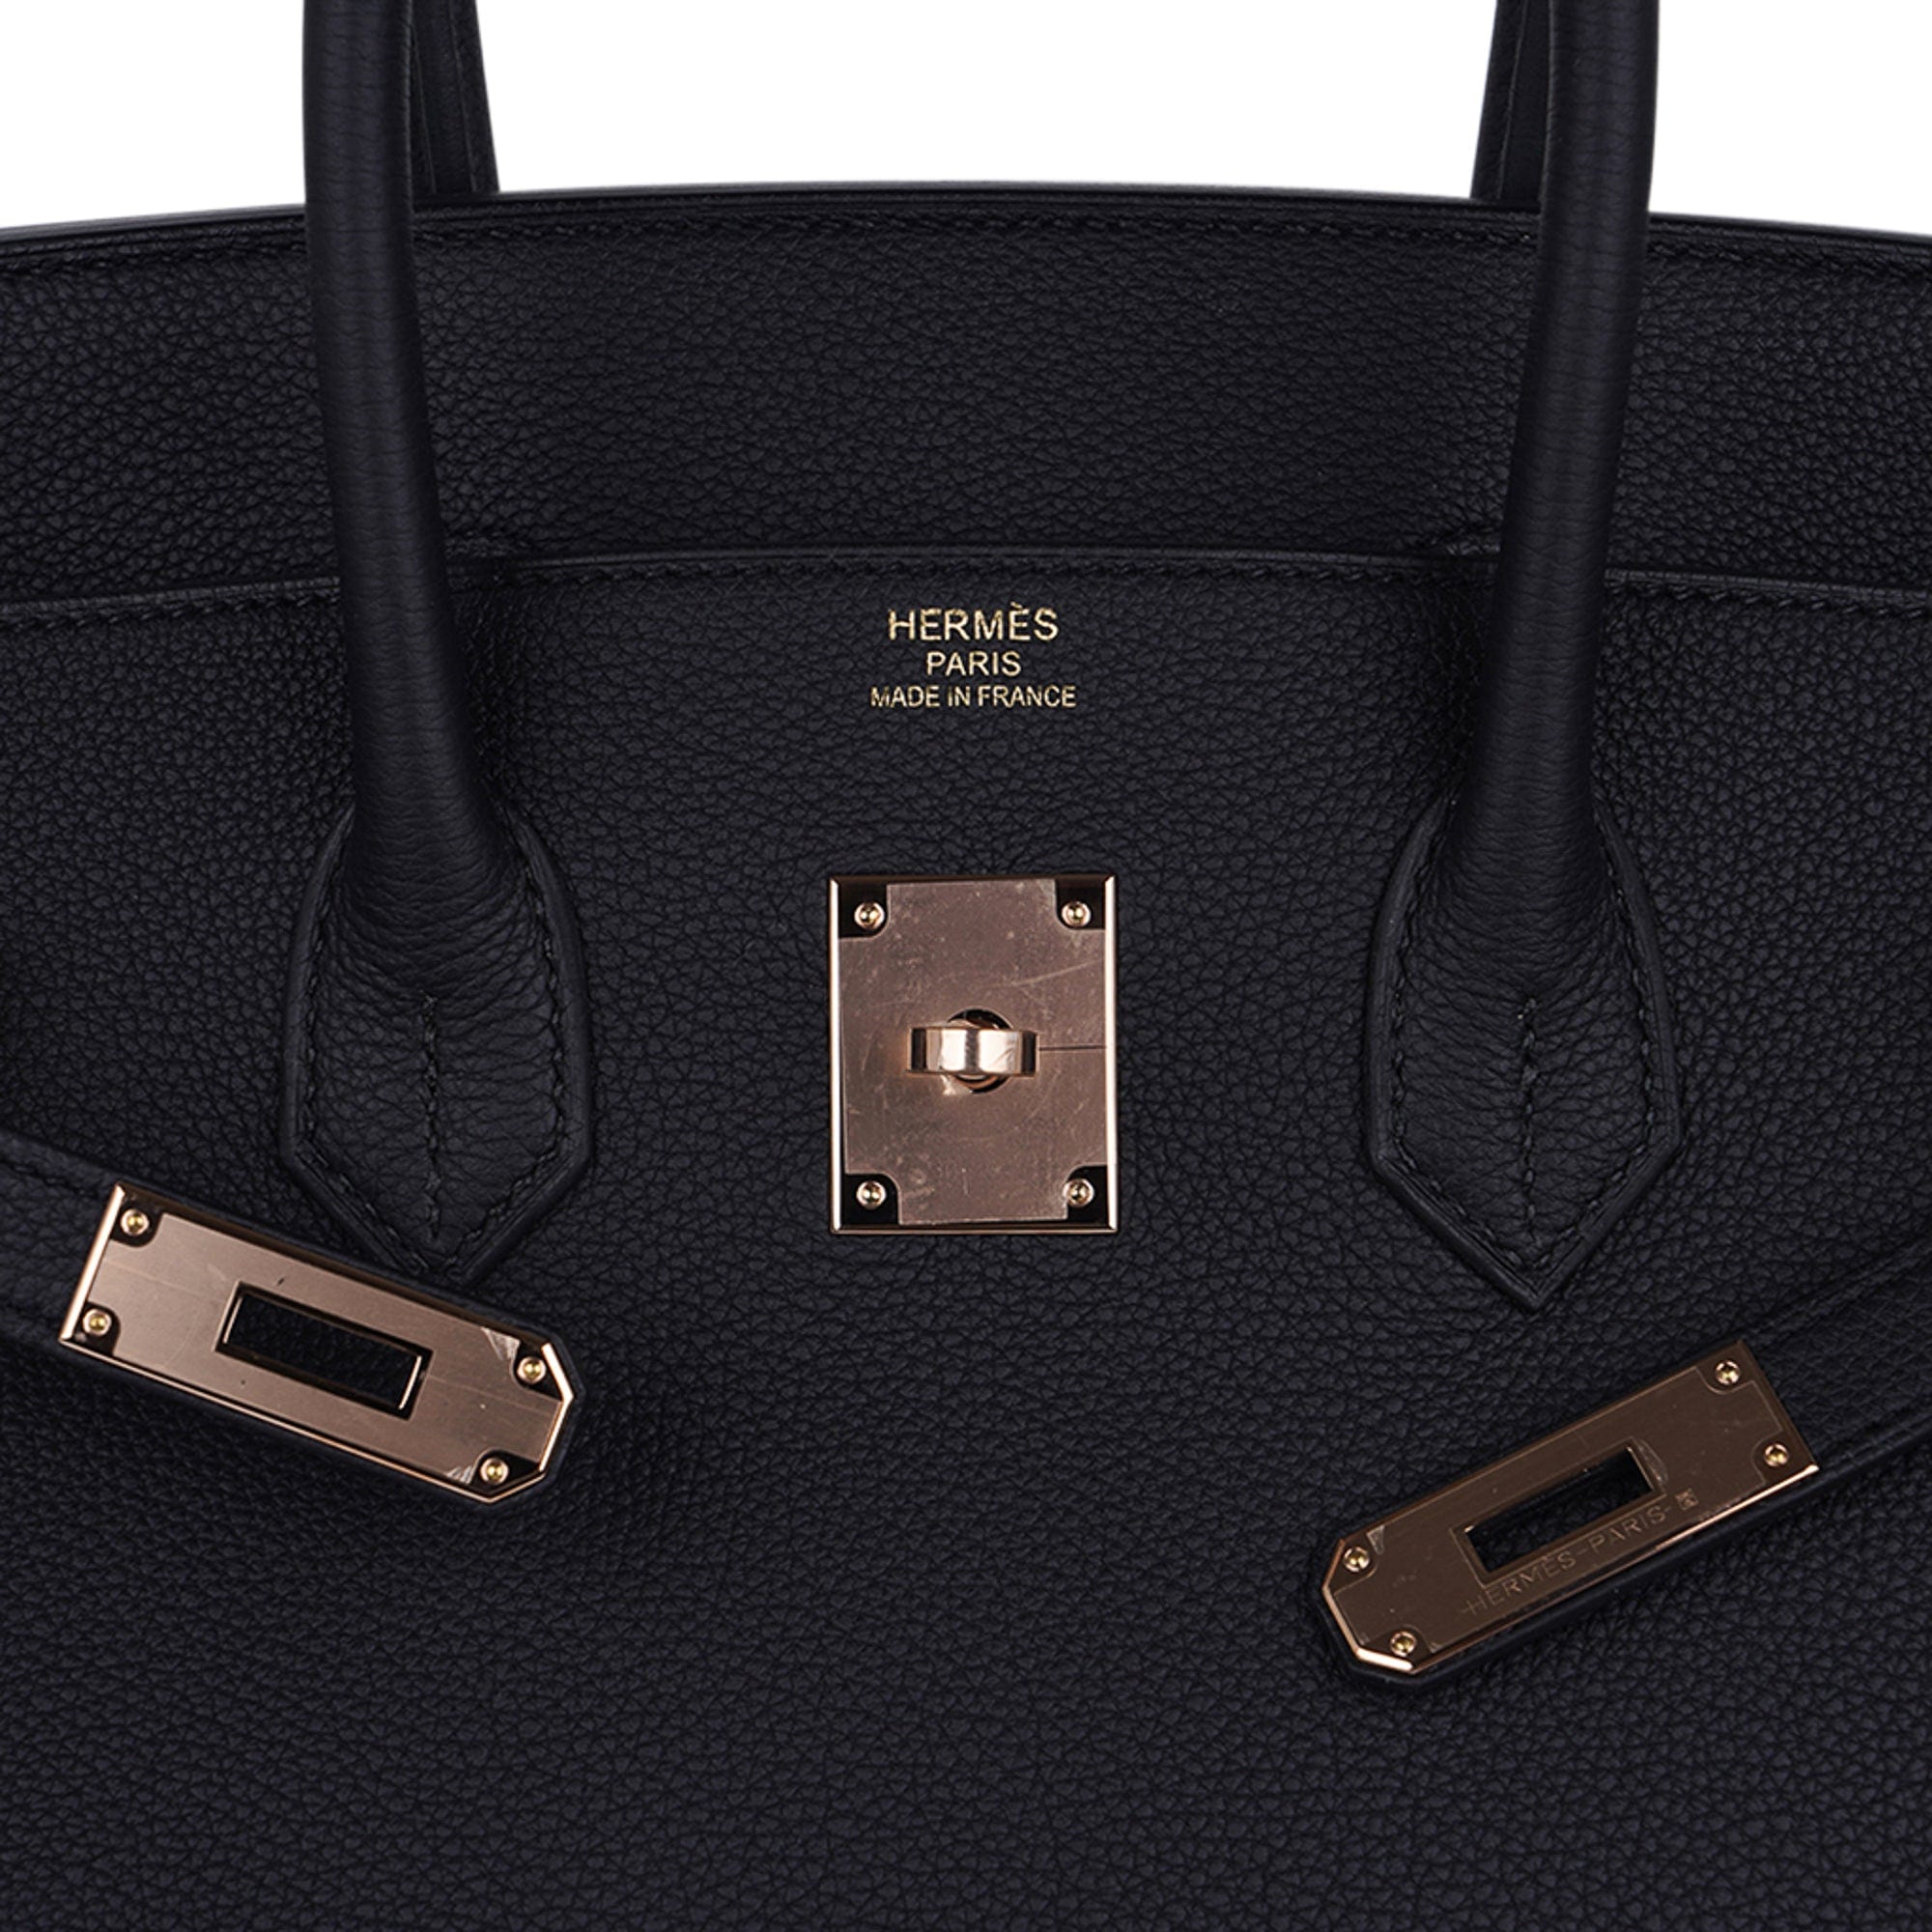 Hermes Black Togo Leather Gold Hardware Birkin 35 Bag Hermes